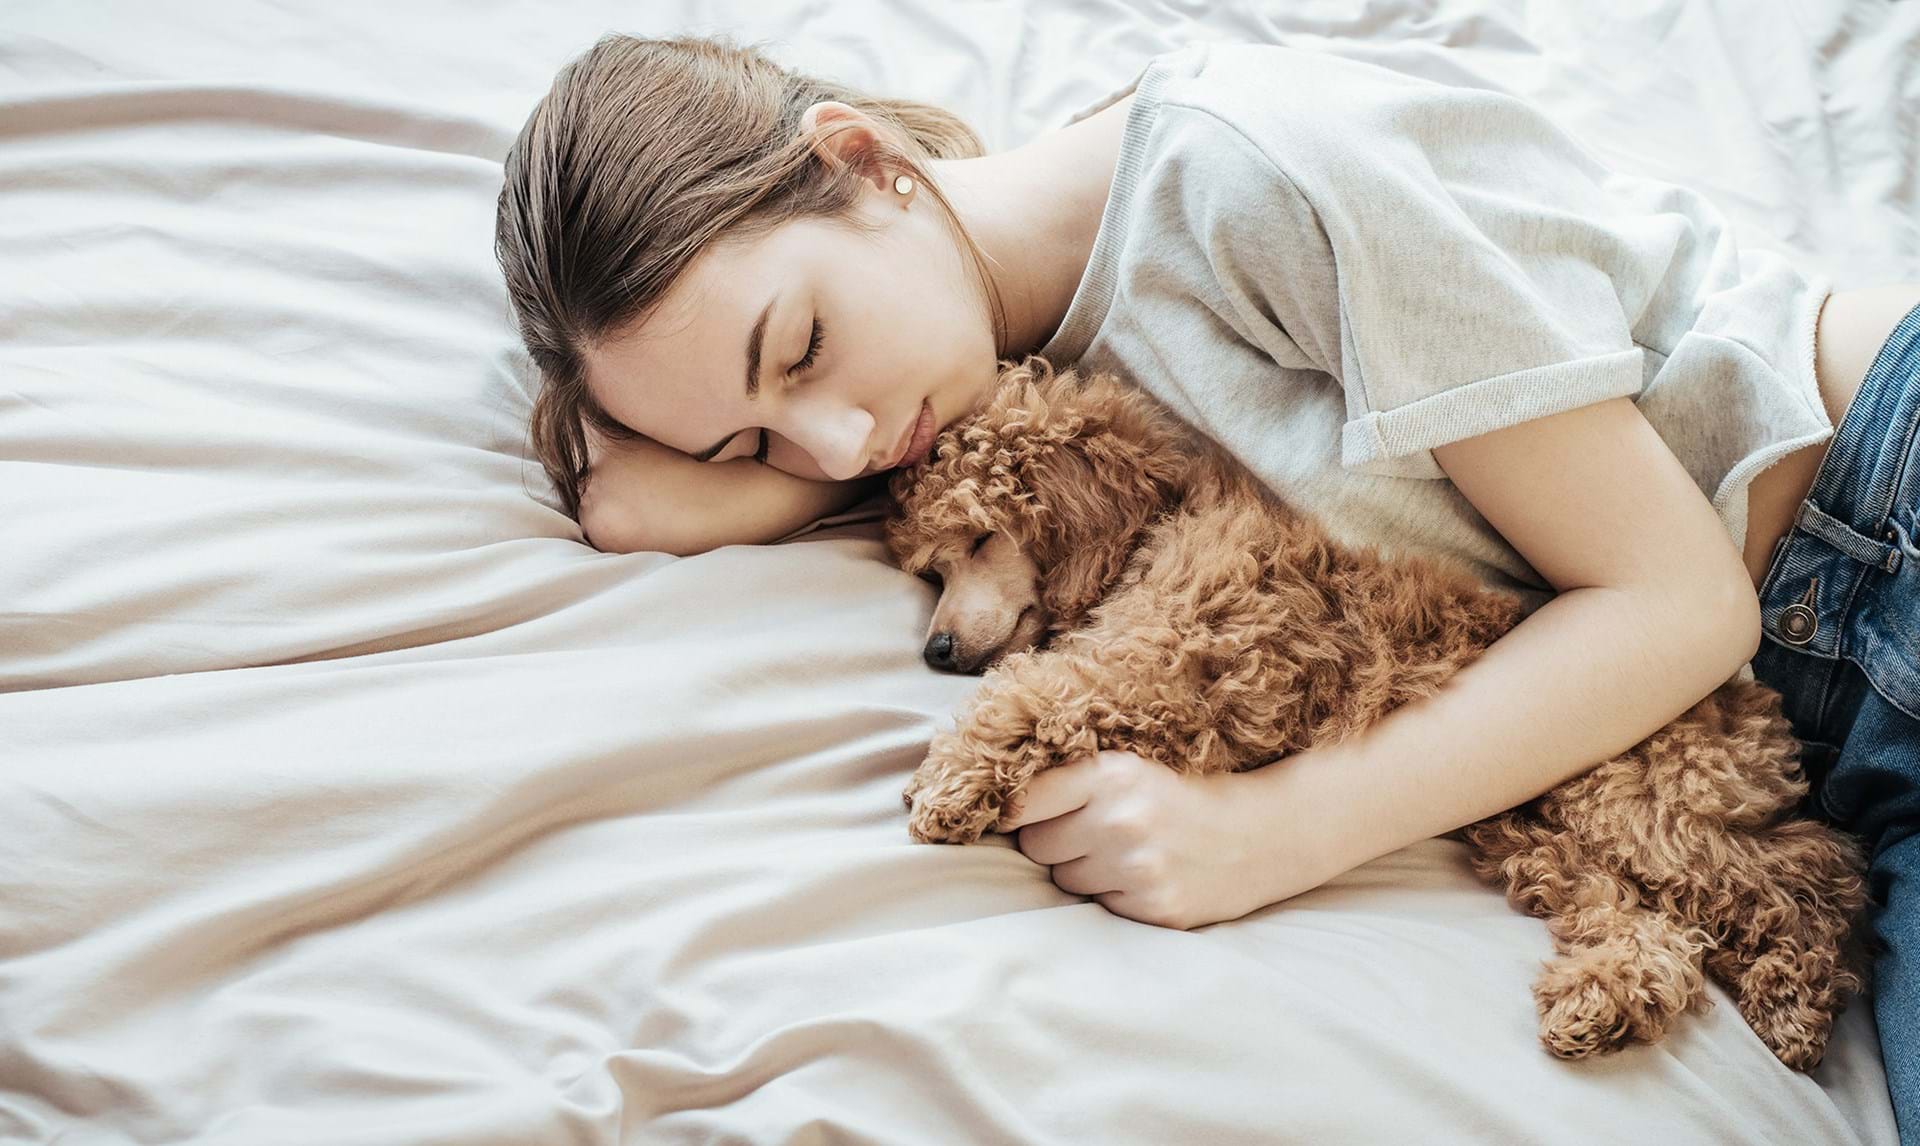 Hunde er sengepartnere kærester, forskning - ALT.dk